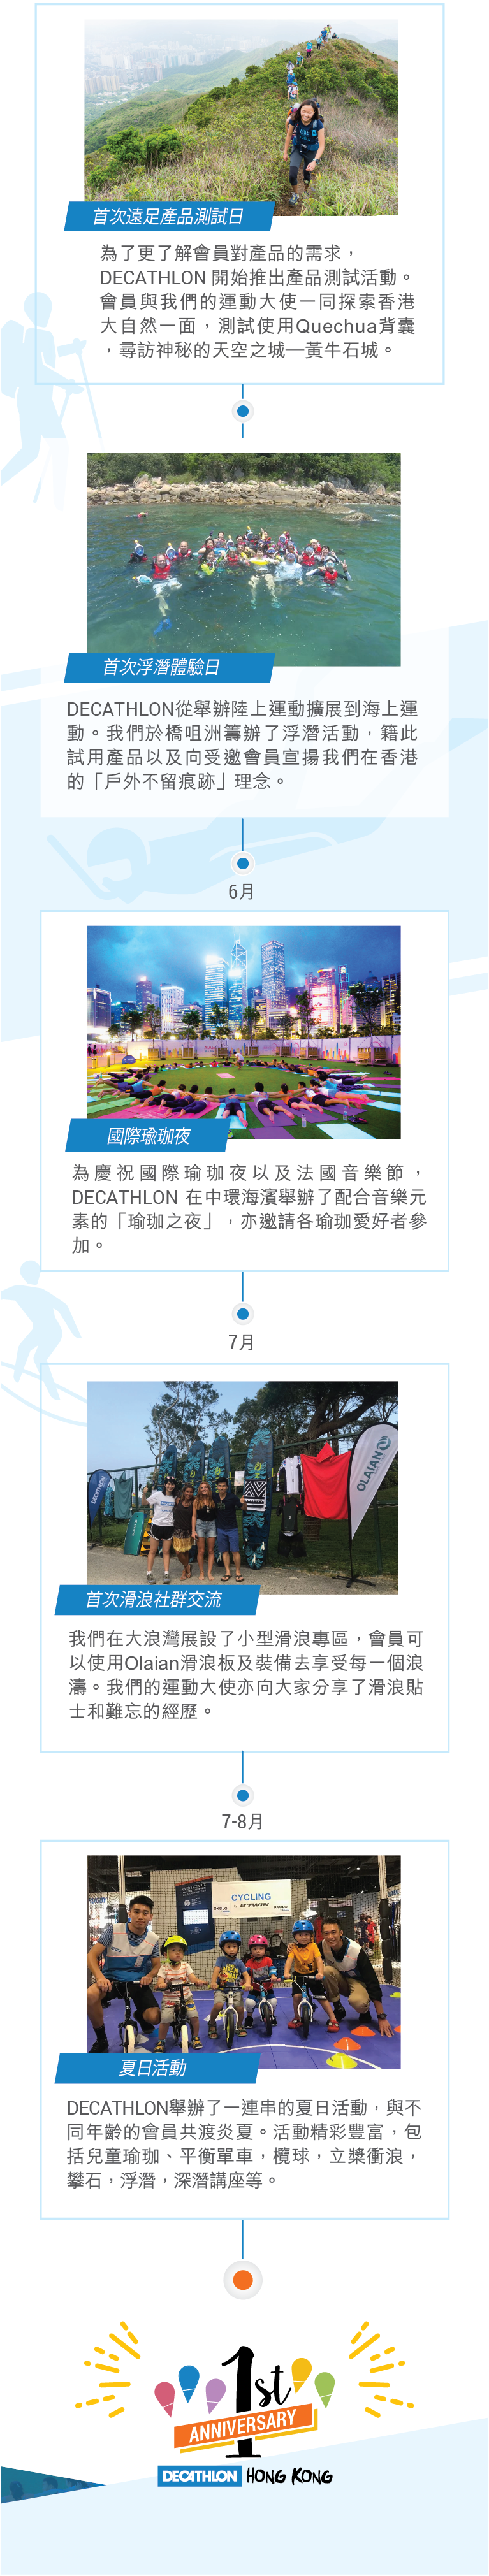 精彩回顧DECATHLON HK 1週年活動